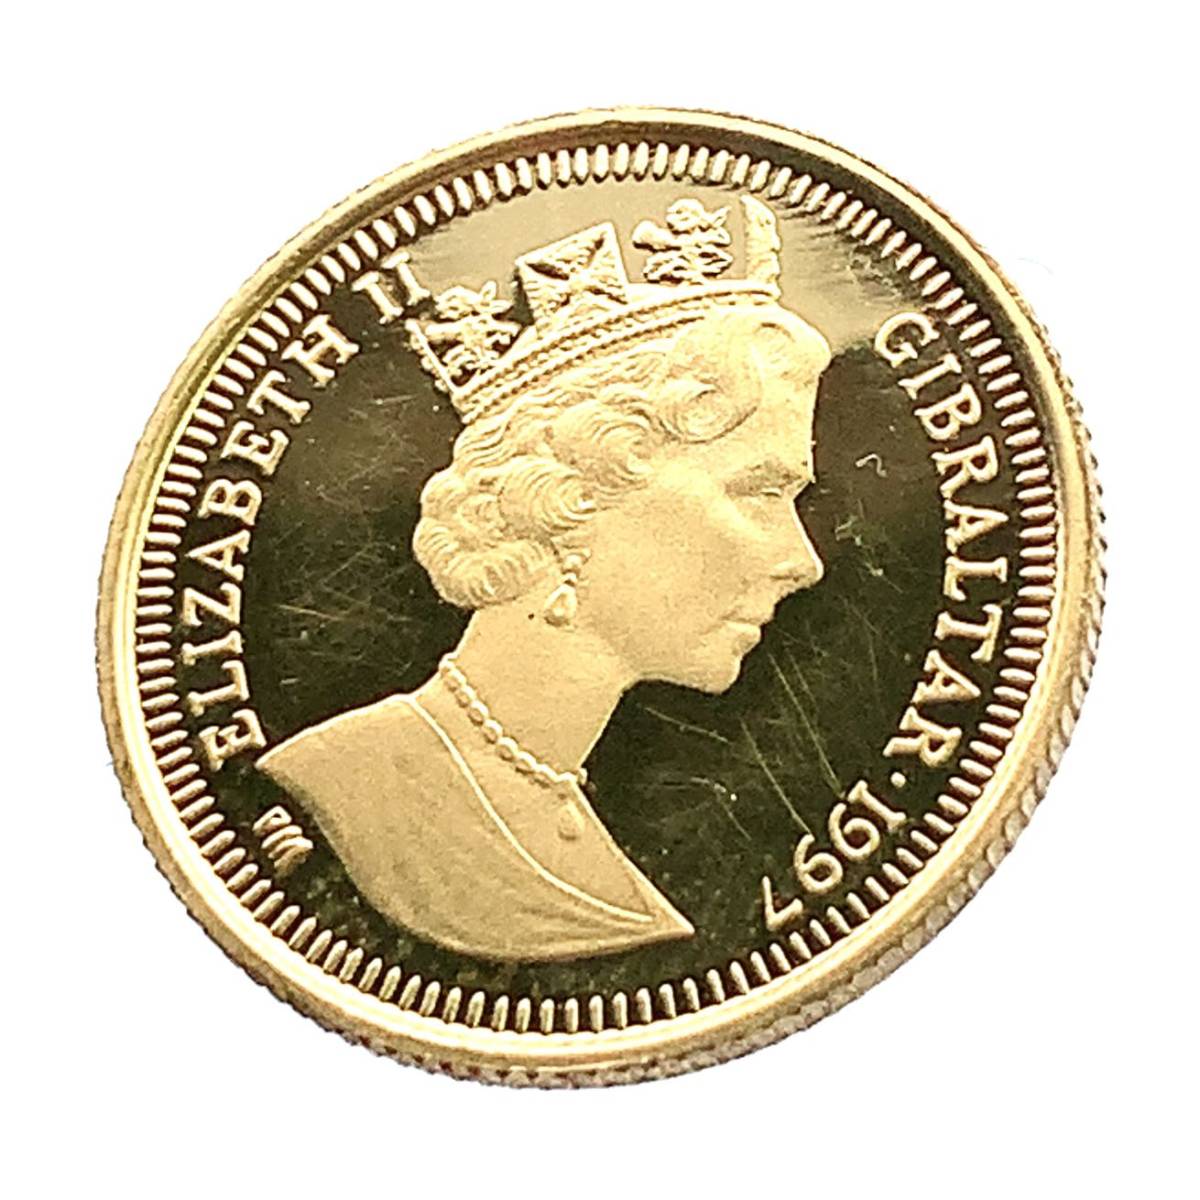  ピーターラビット金貨 エリザベス女王 ジブラルタル 1997年 1.2g 24金 純金 イエローゴールド コレクション Gold_画像2